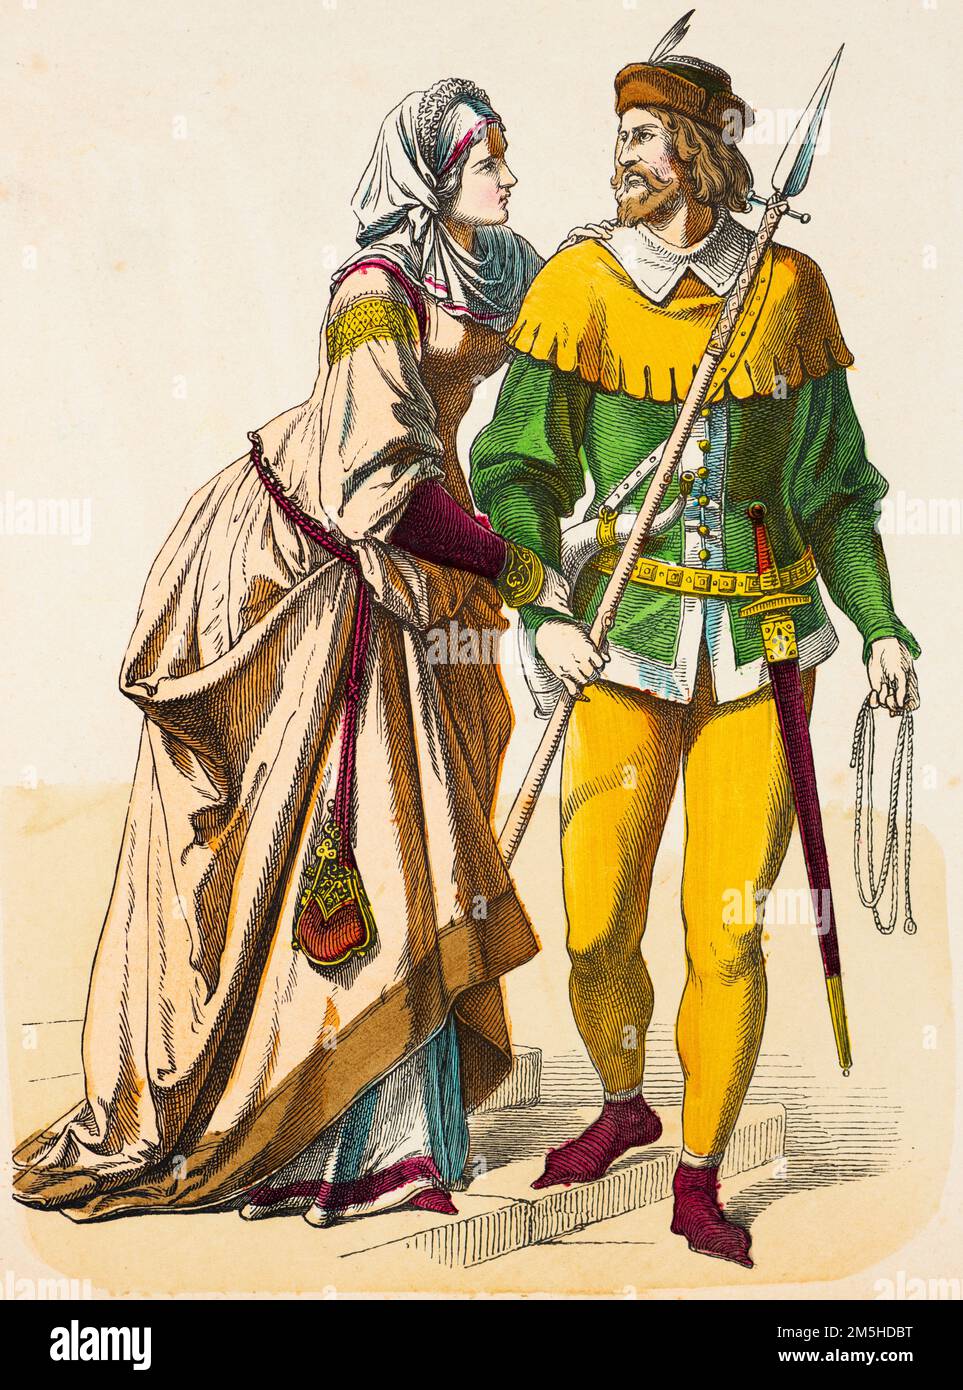 Trajes históricos del siglo 14th, ilustración histórica, Münchener Bilderbogen, München 1890 Foto de stock